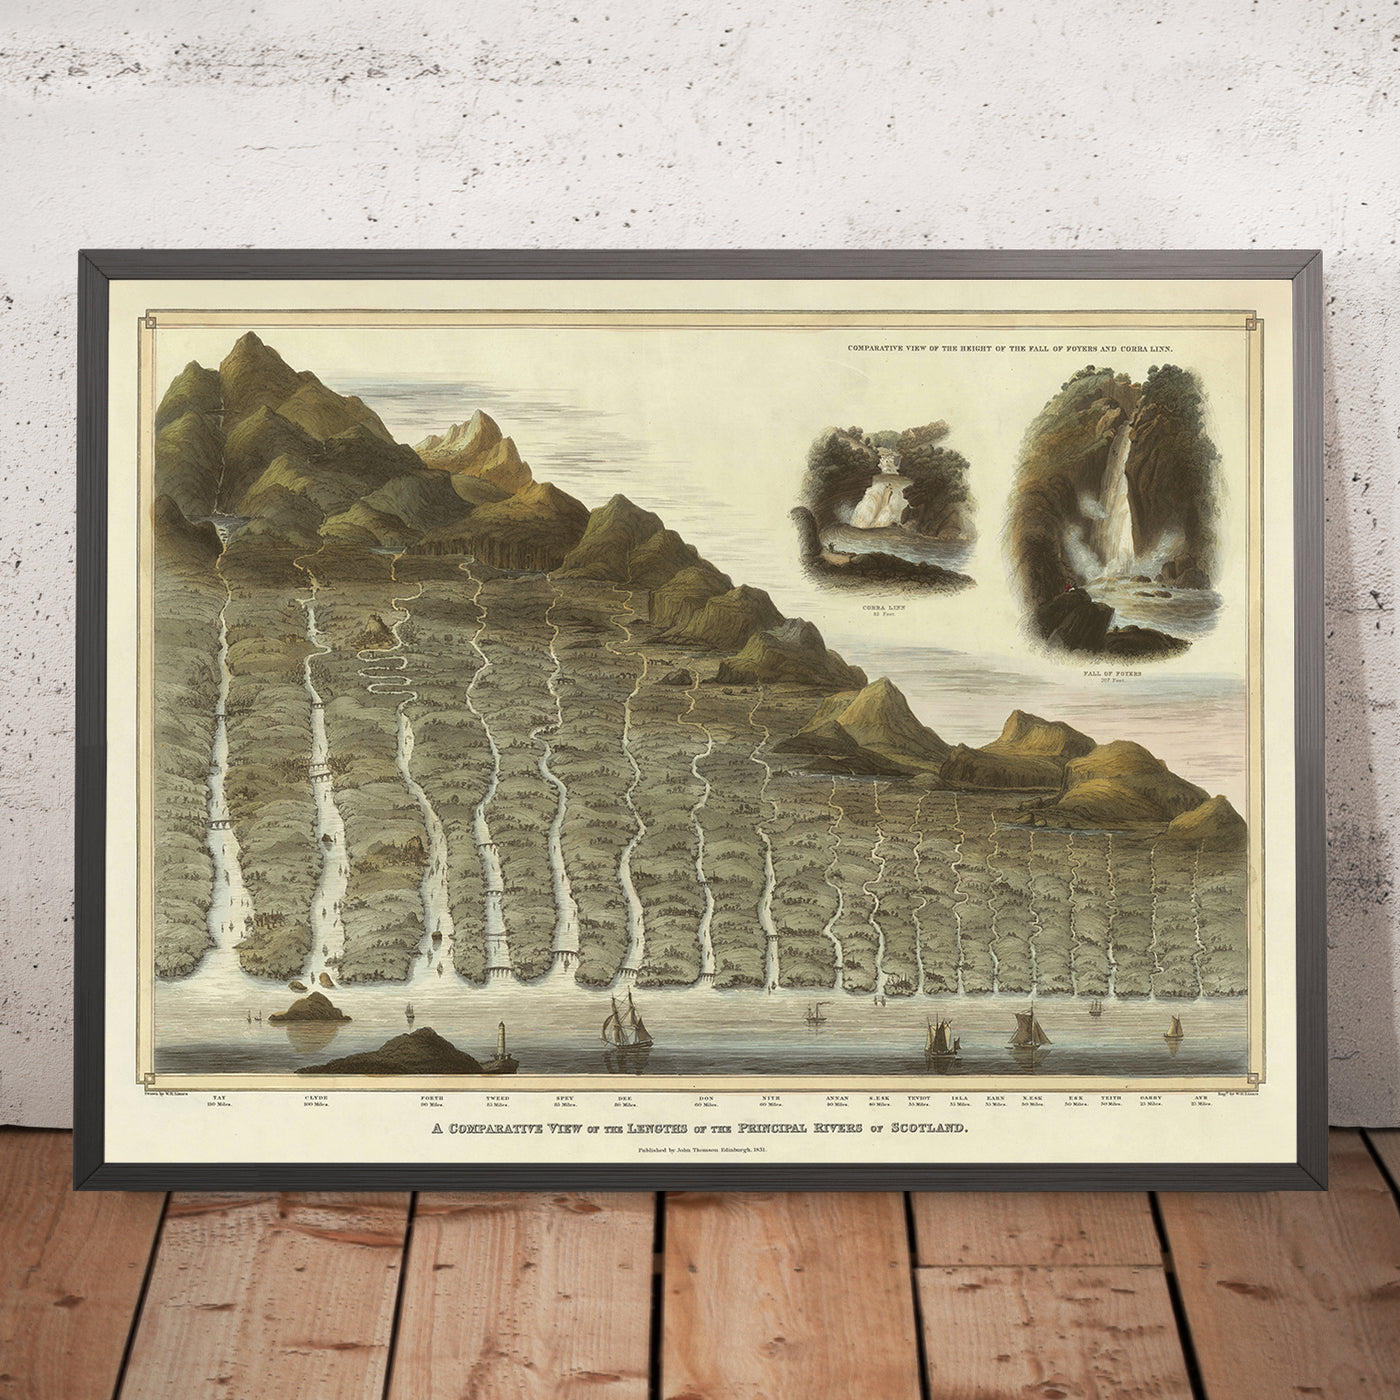 Ancienne carte infographique des principales rivières et cascades d'Écosse par Lizars, 1832 : longueurs, hauteurs comparatives, bordure décorative